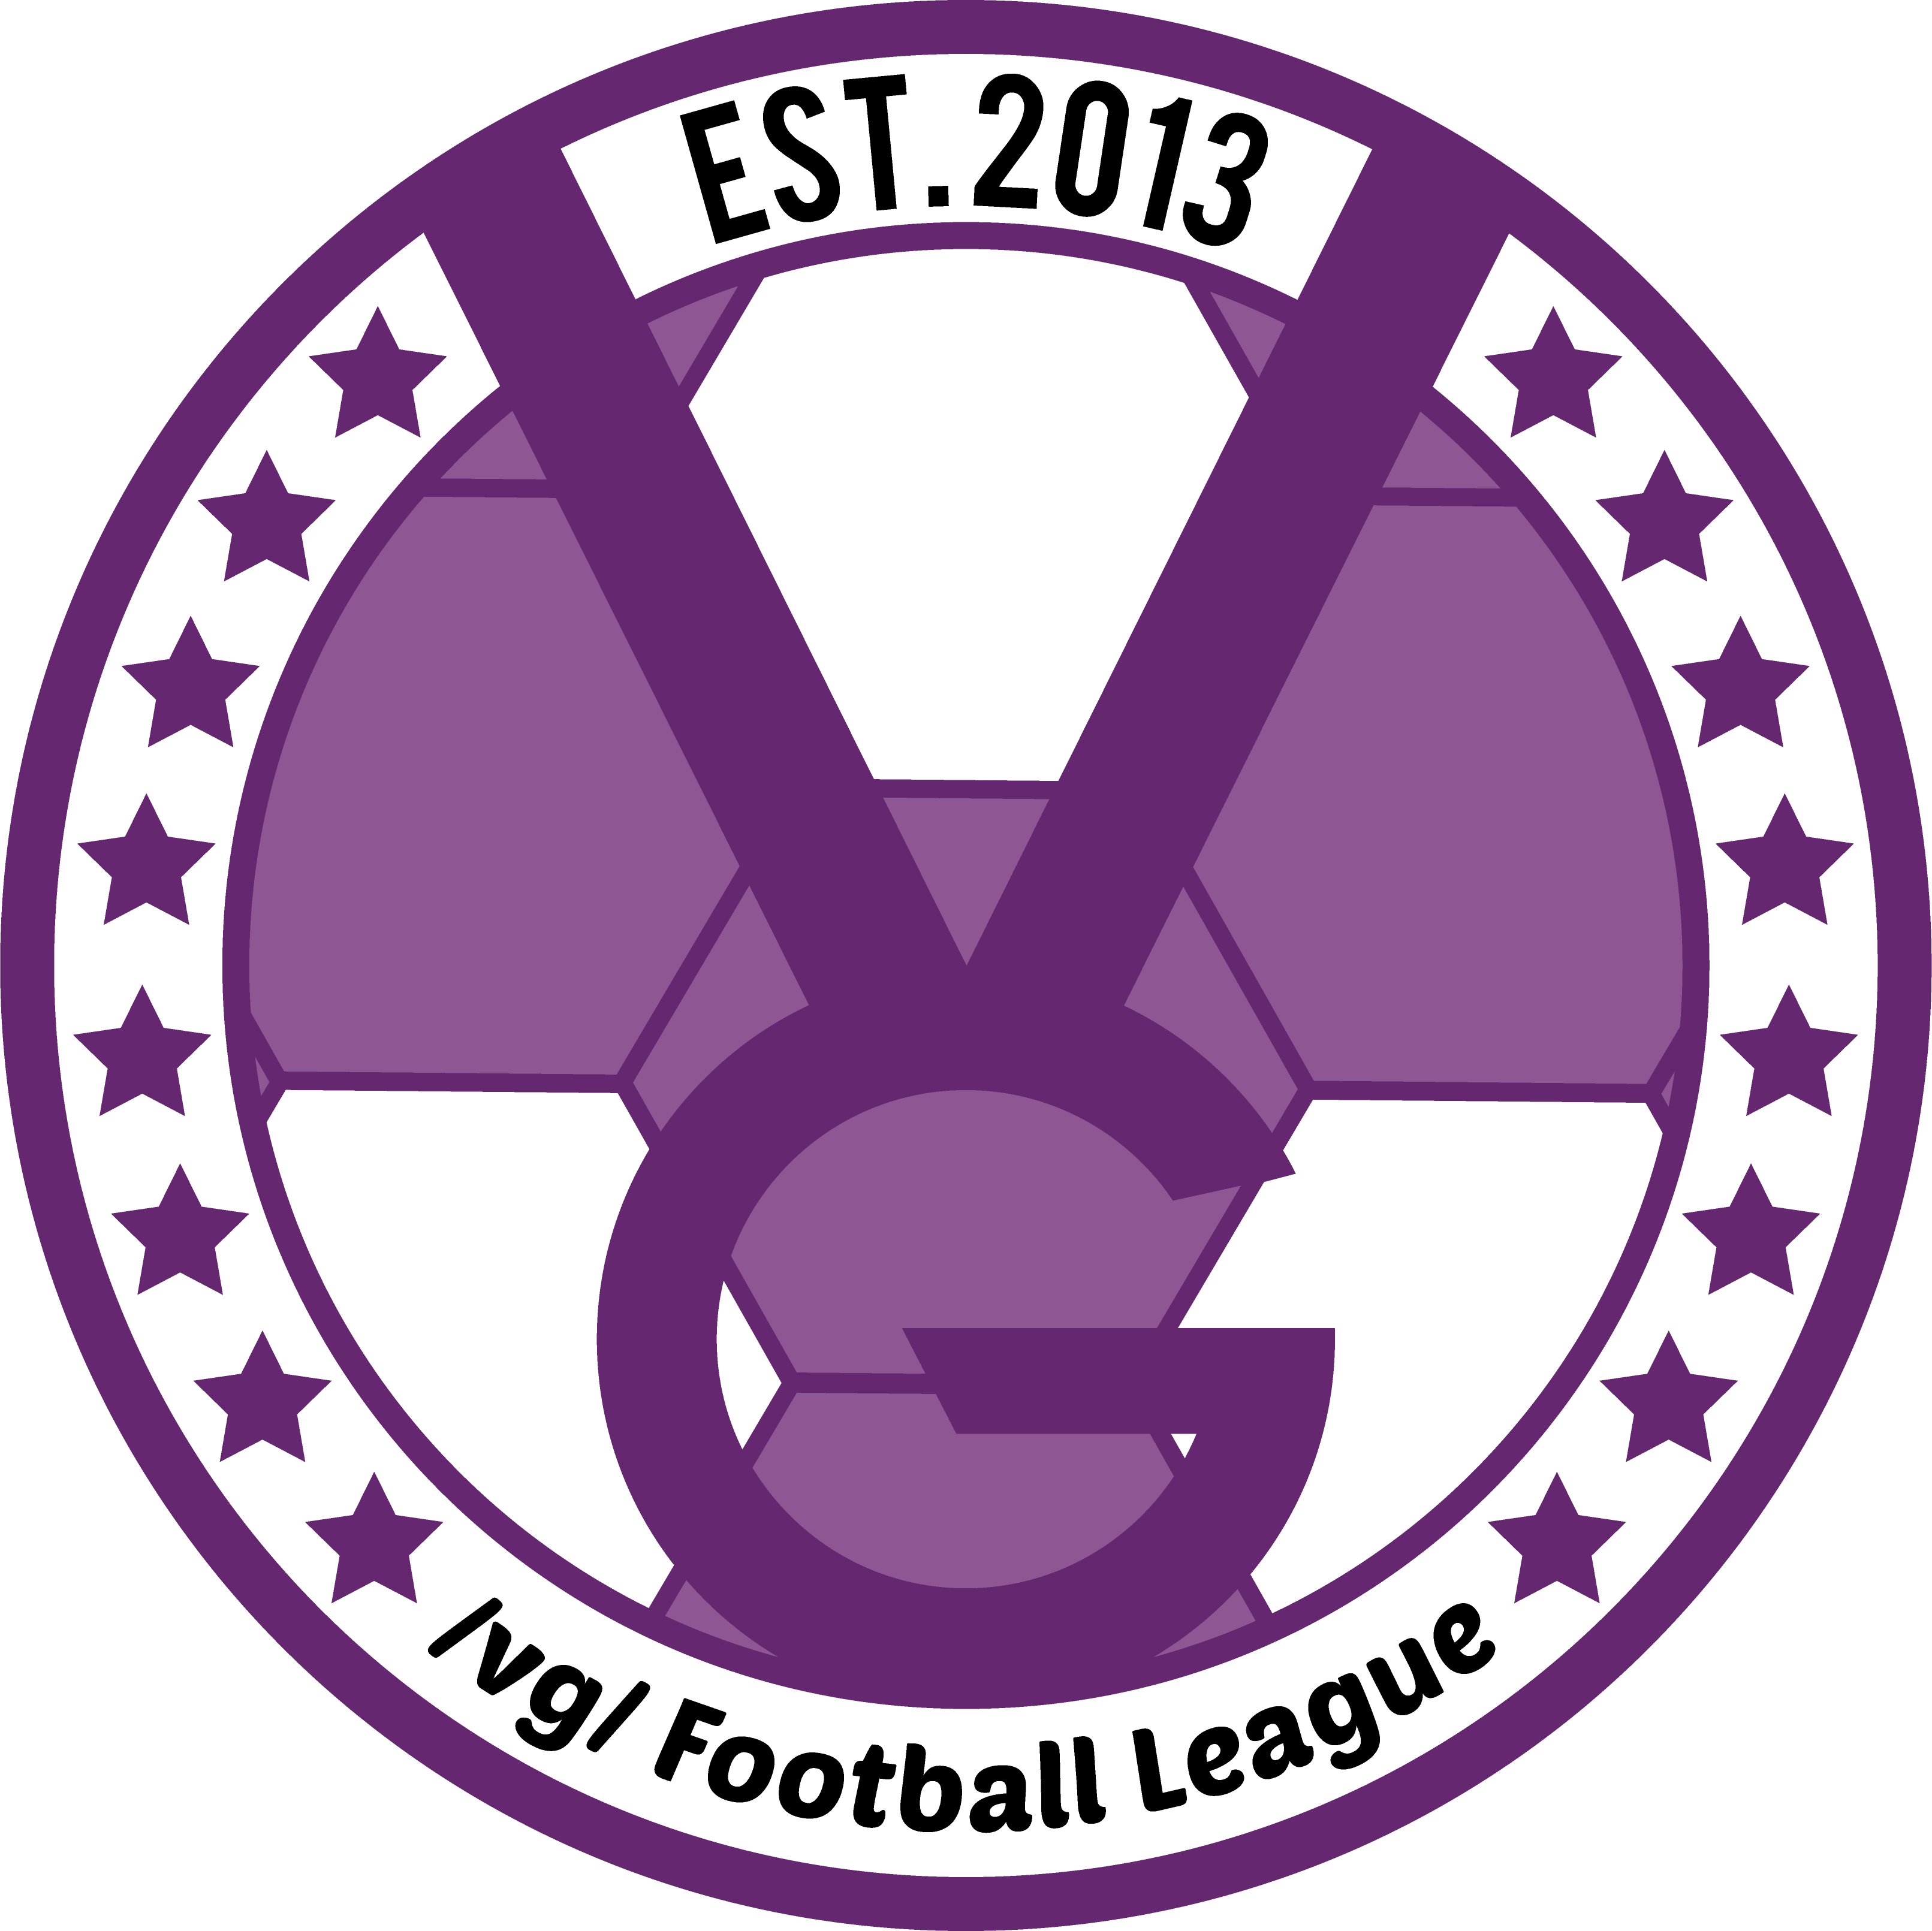 /vg/ League 13